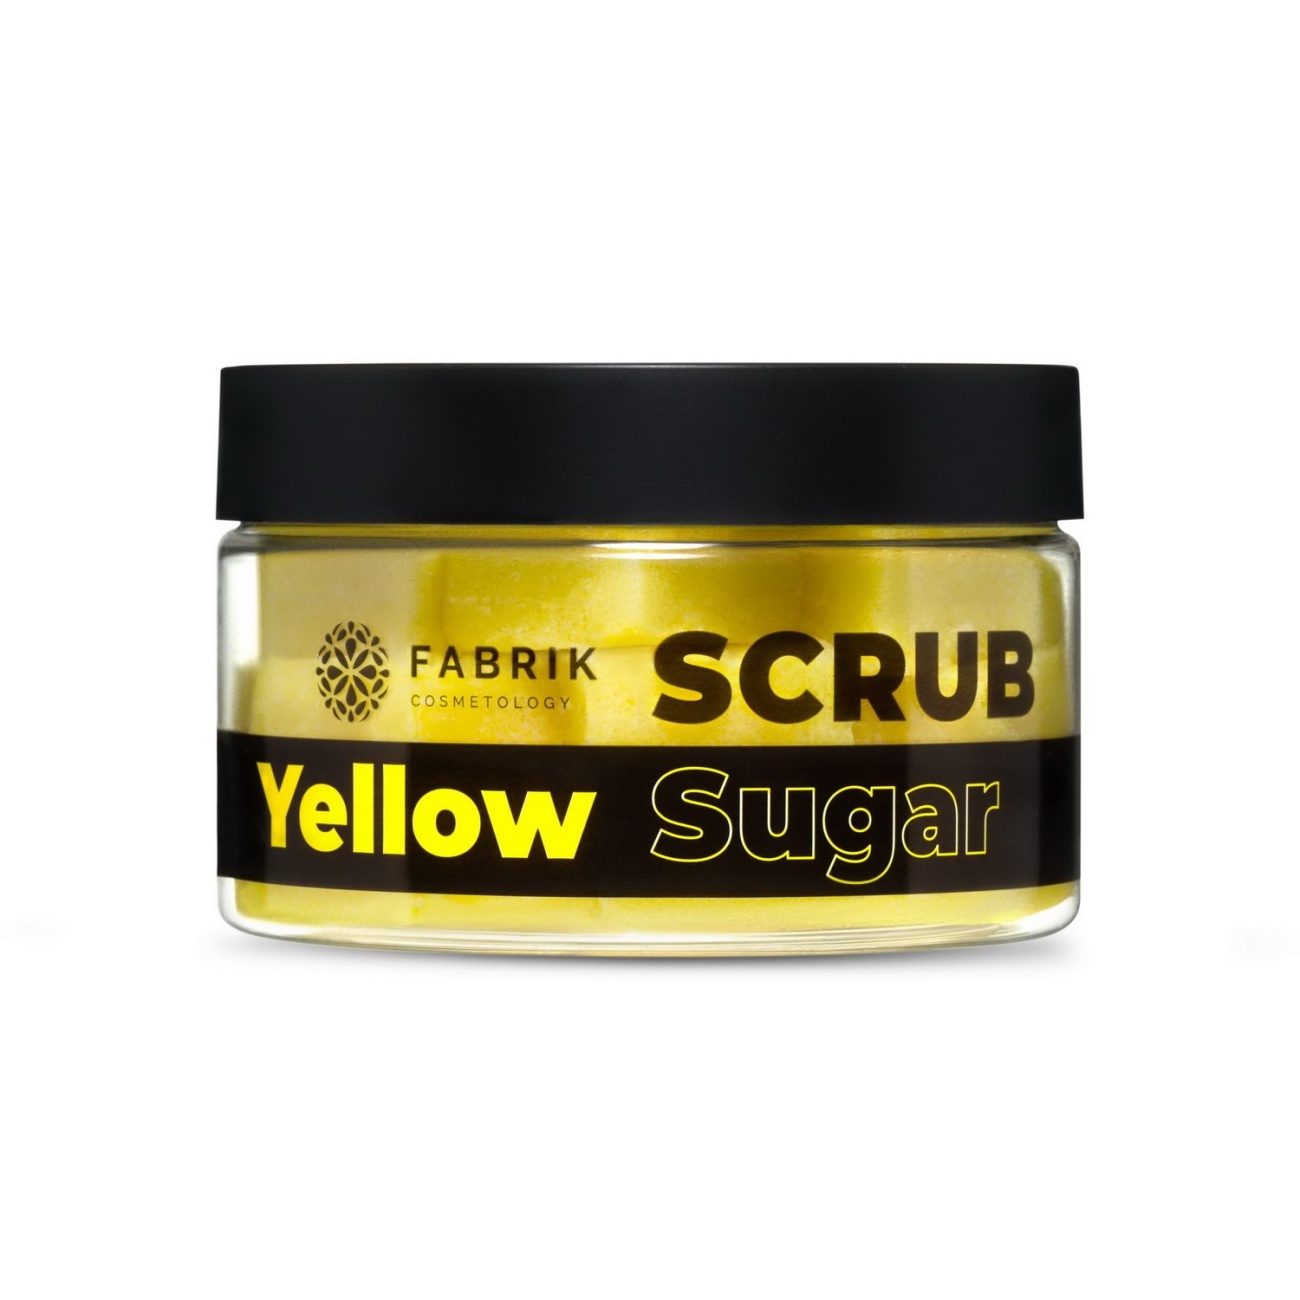 Скраб для тела Fabrik Cosmetology Sugar Yellow Scrub сахарный 200 г 4610214364841